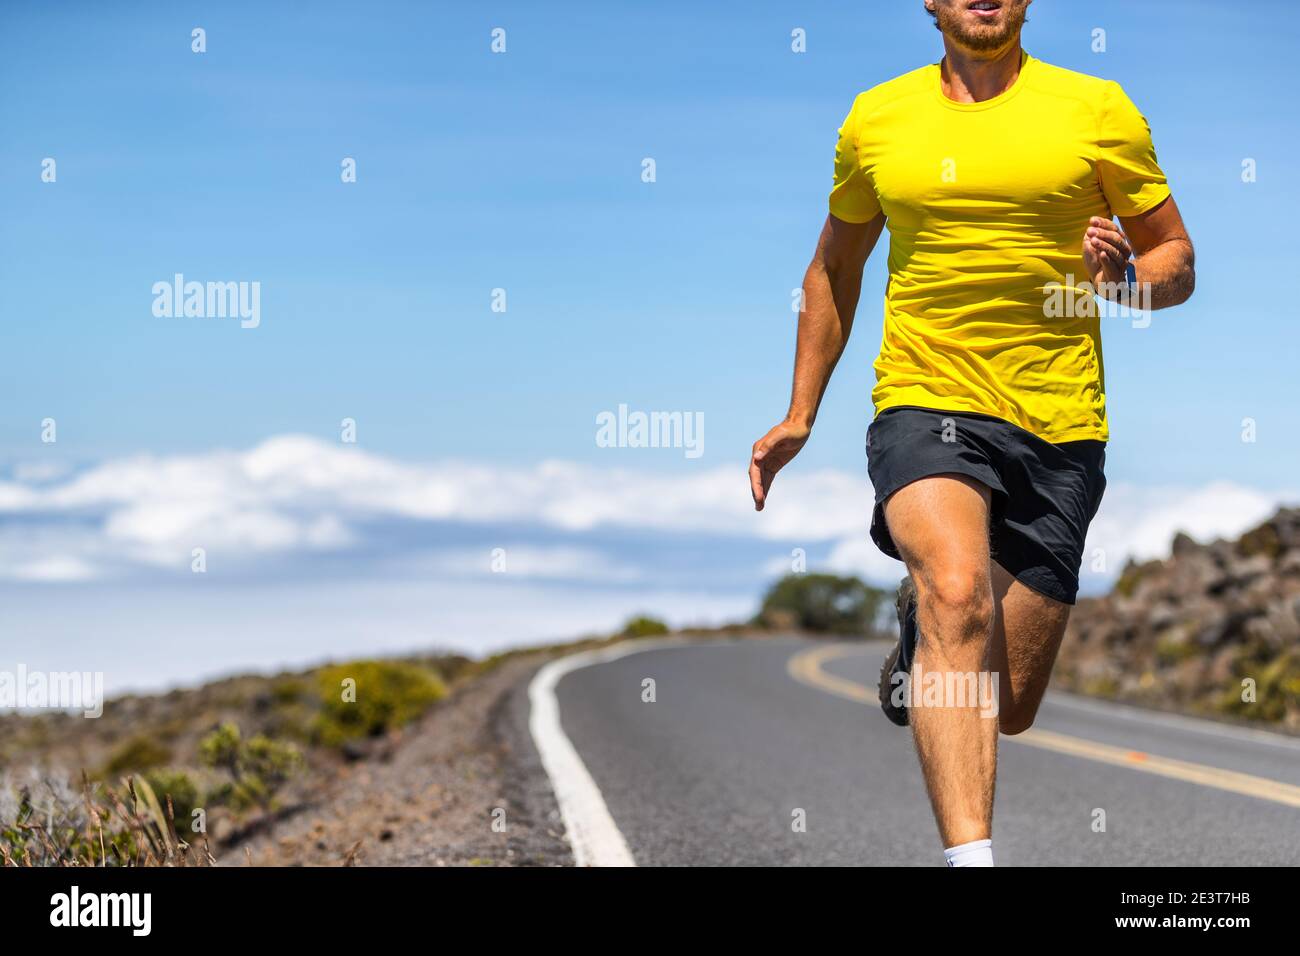 Running man auf Outdoor-Straße laufen Läufer in Sportkleidung Sprinten in Geschwindigkeit - aktive Lifestyle-Sportler leben ein gesundes Leben Stockfoto